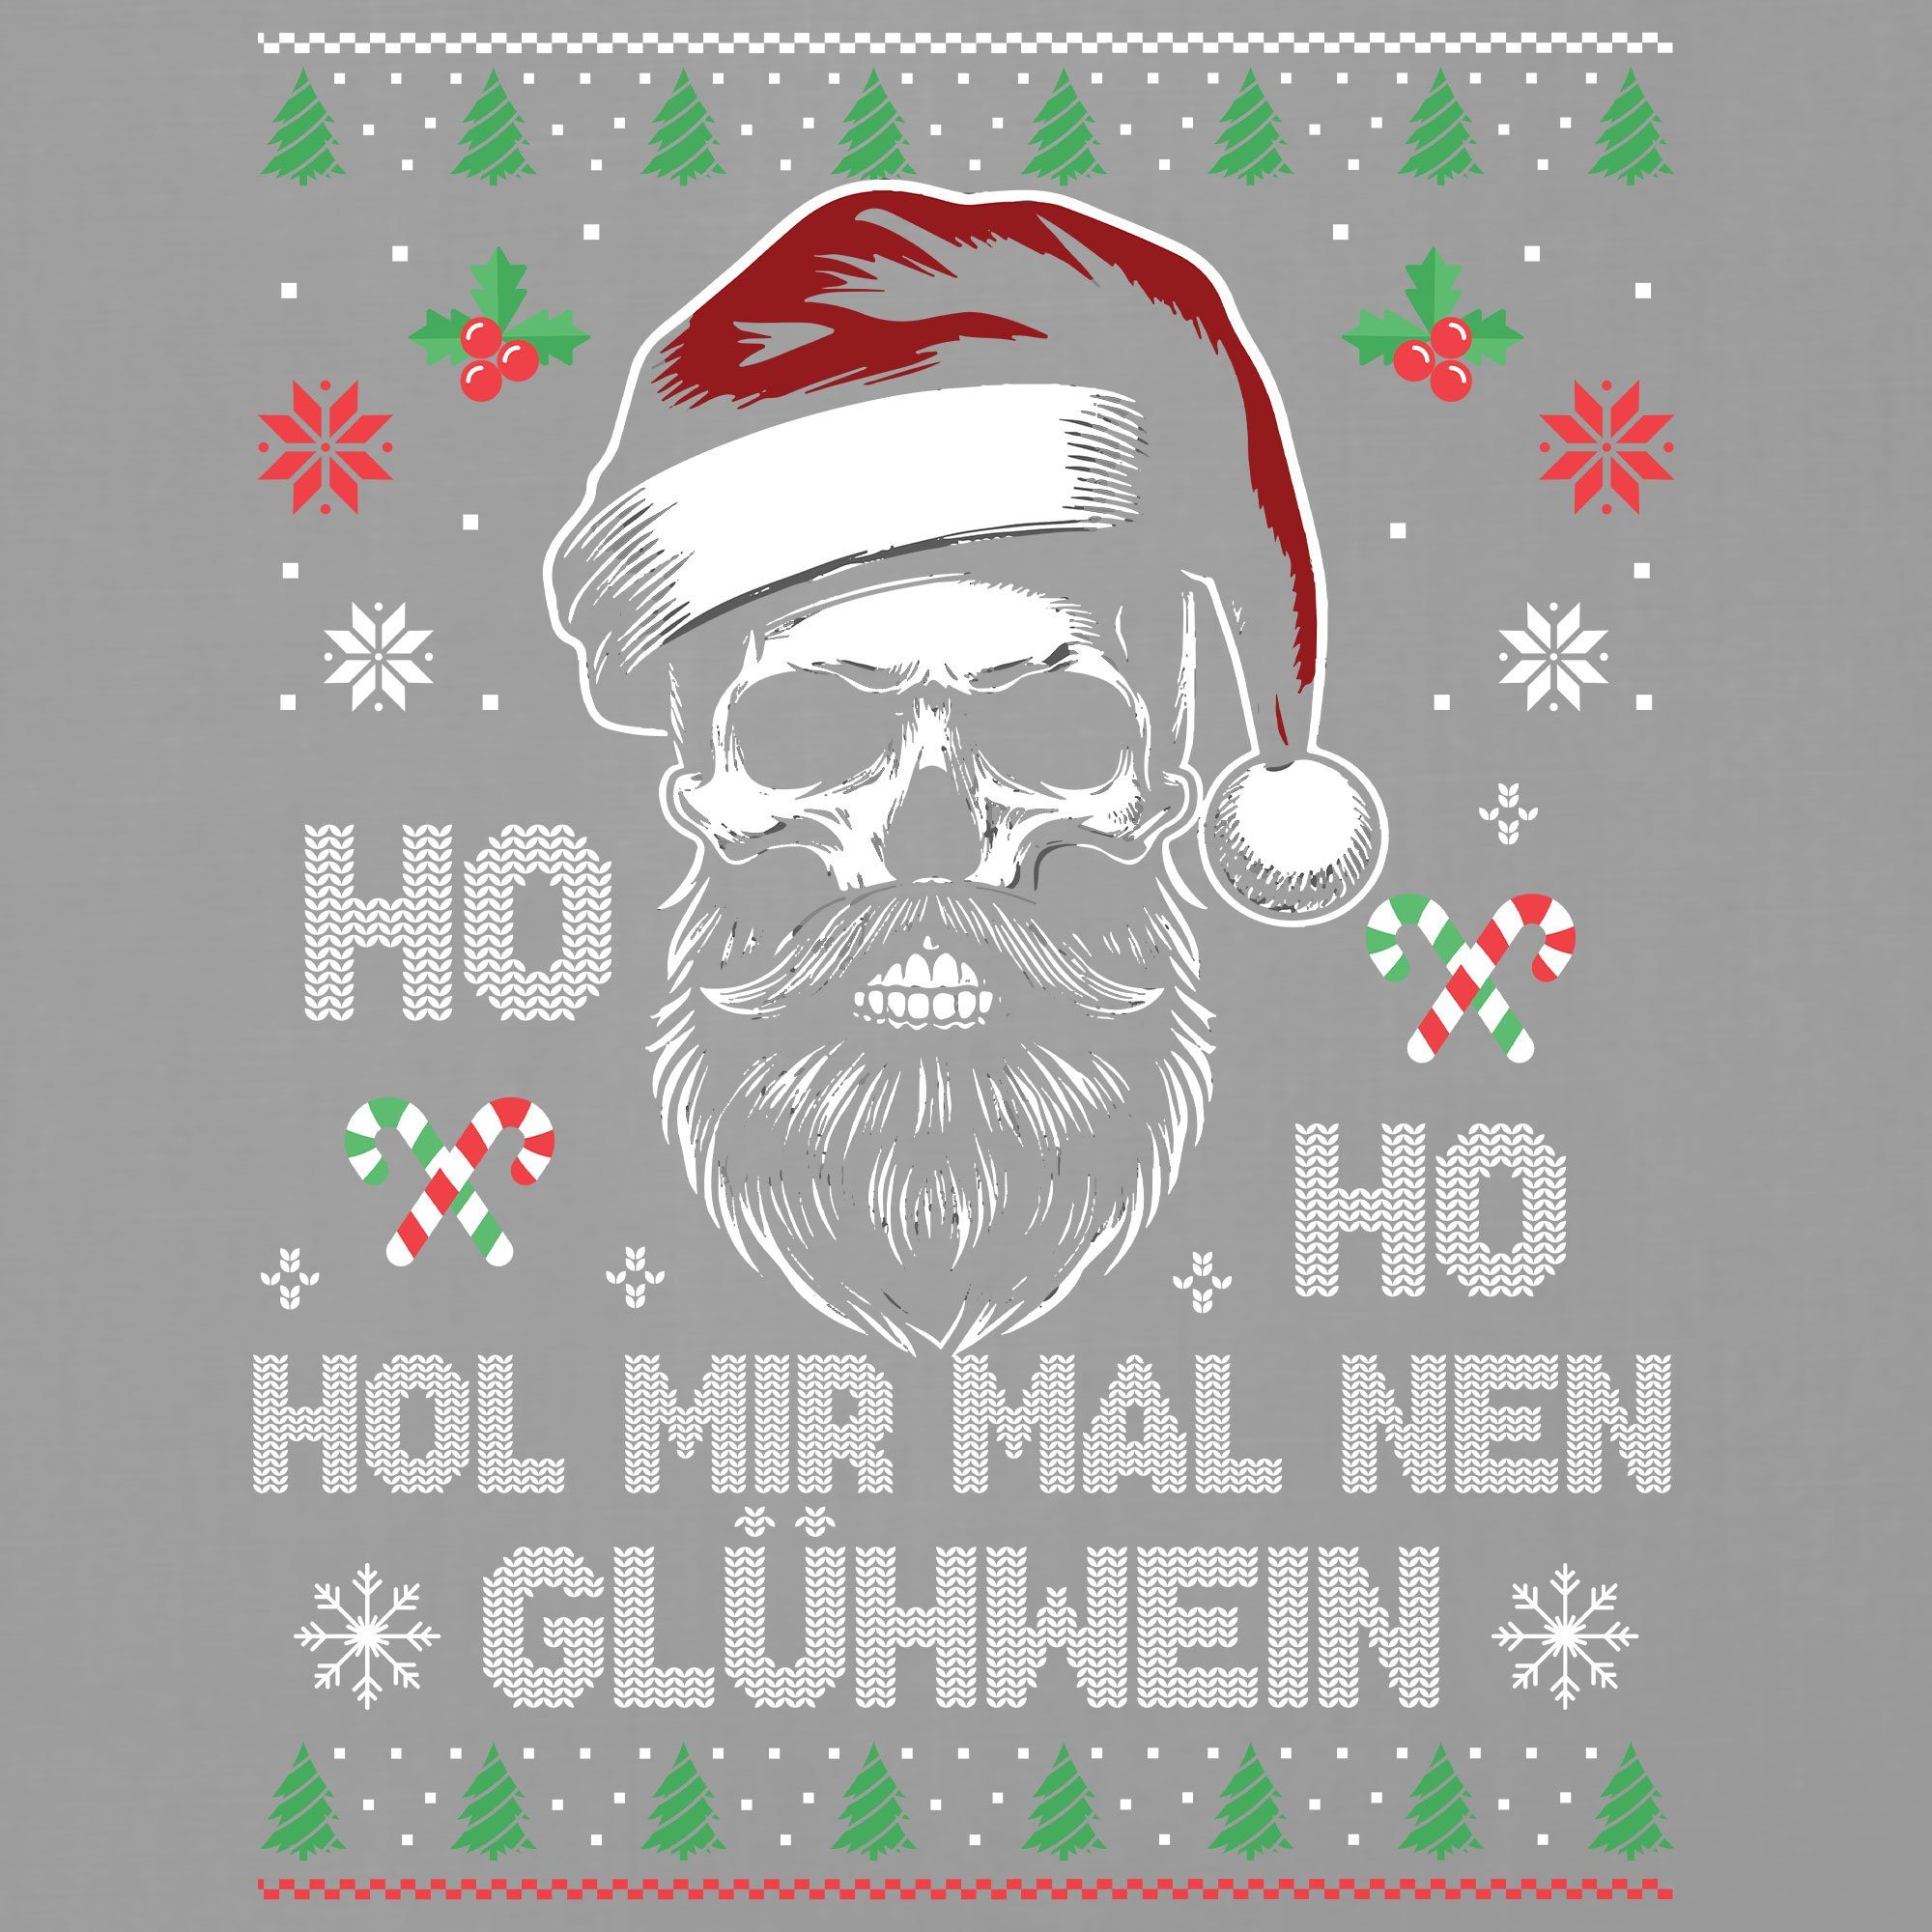 Formatee Grau Ho - T-Shirt Herren Ho Heather Kurzarmshirt Glühwein (1-tlg) X-mas Weihnachten Weihnachtsgeschenk Quattro